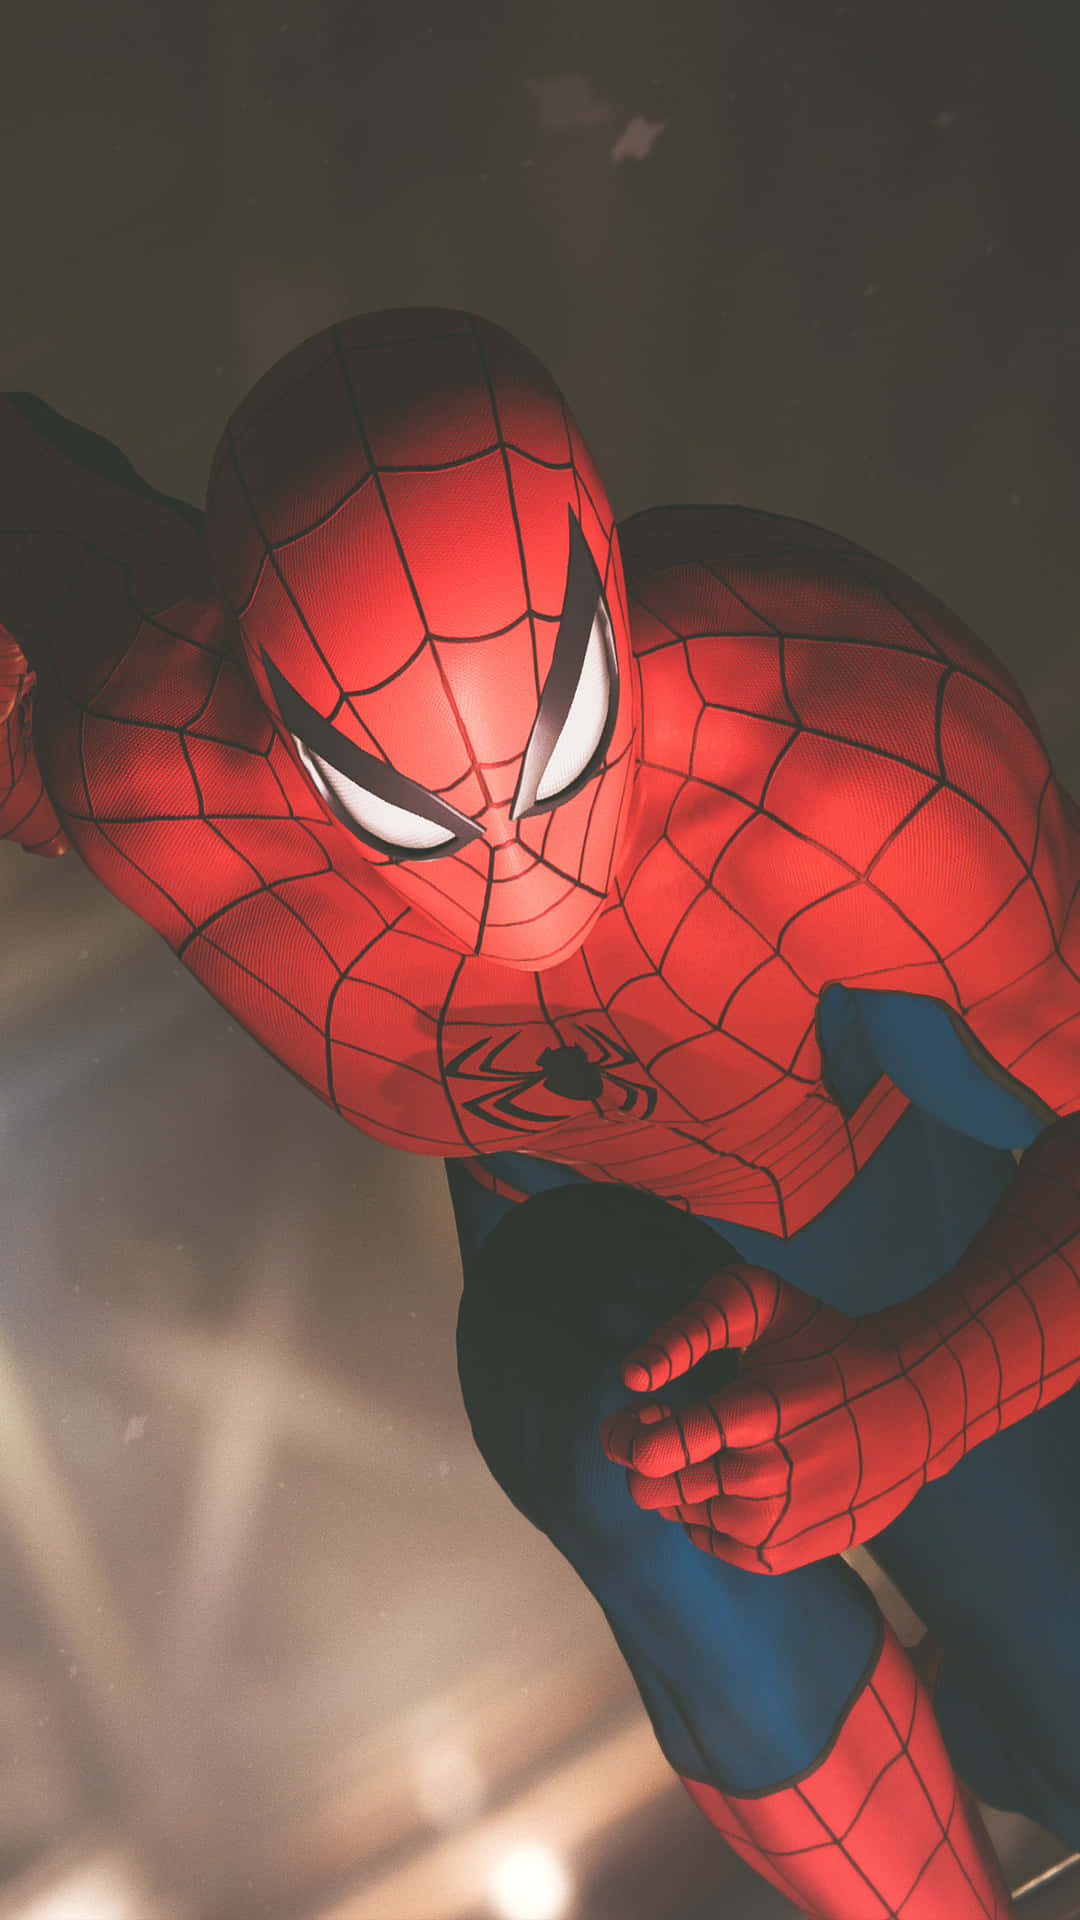 Spider - Man In Action In The Dark Wallpaper